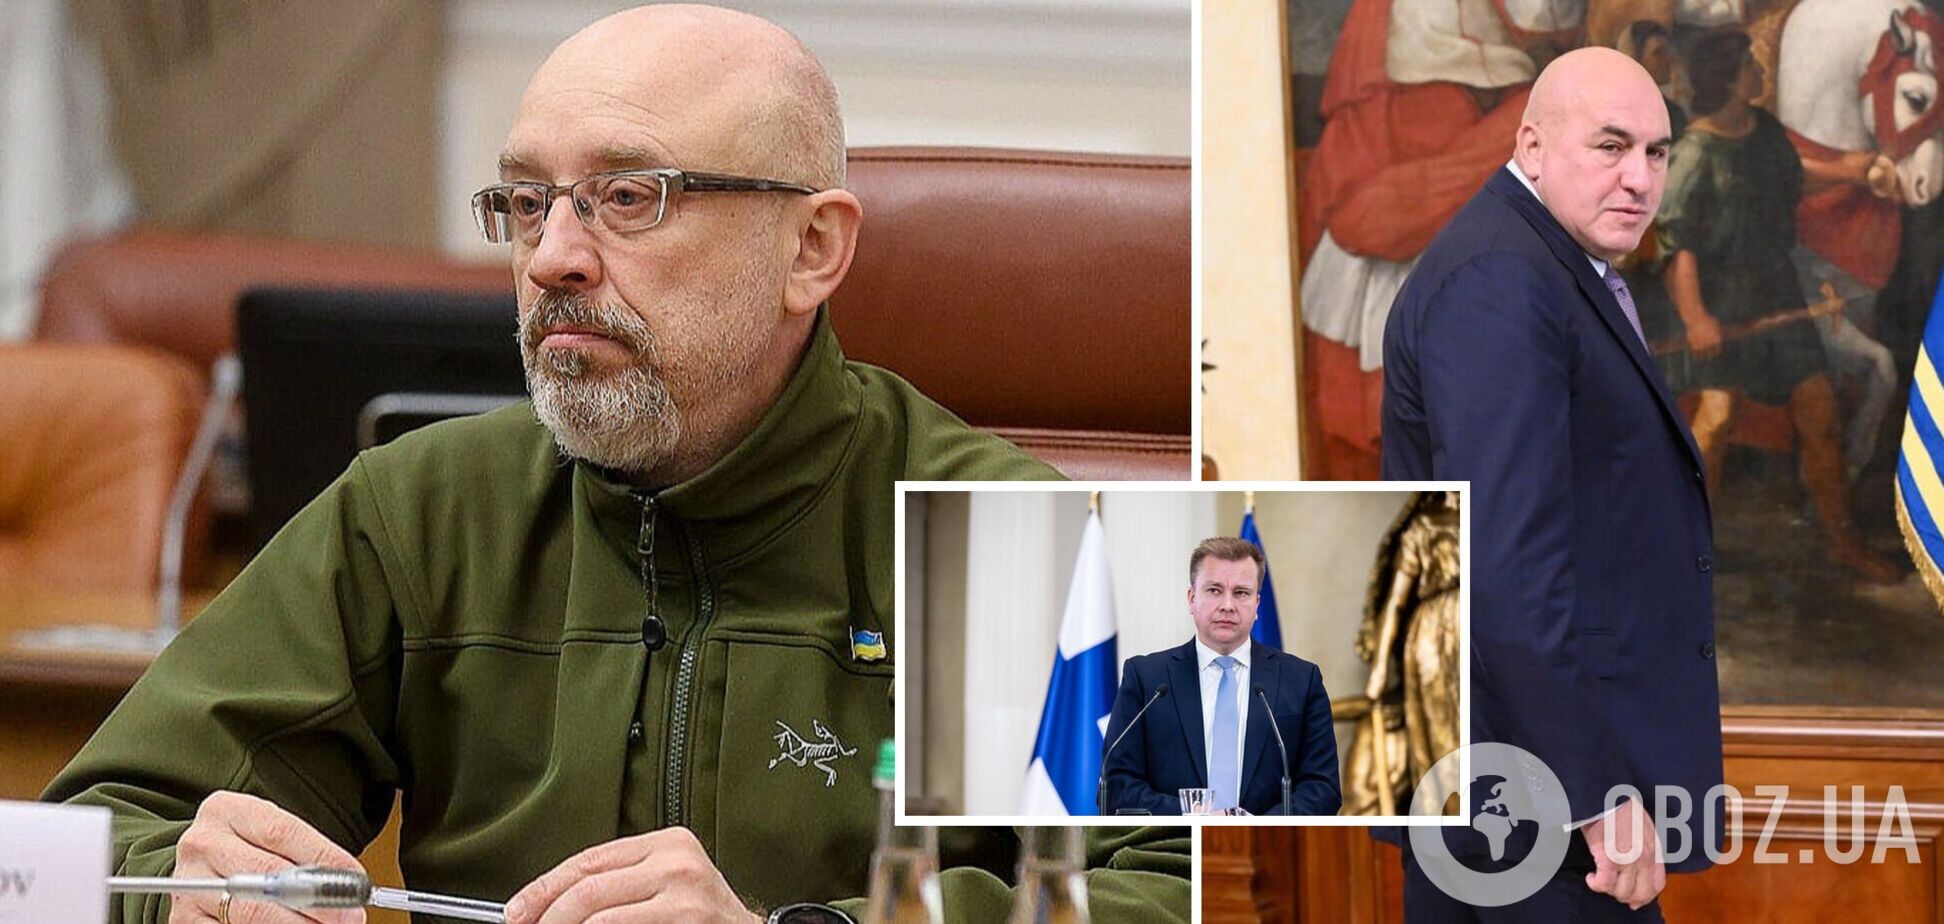 Резников обсудил с главами минобороны Финляндии и Италии военную помощь Украине: детали